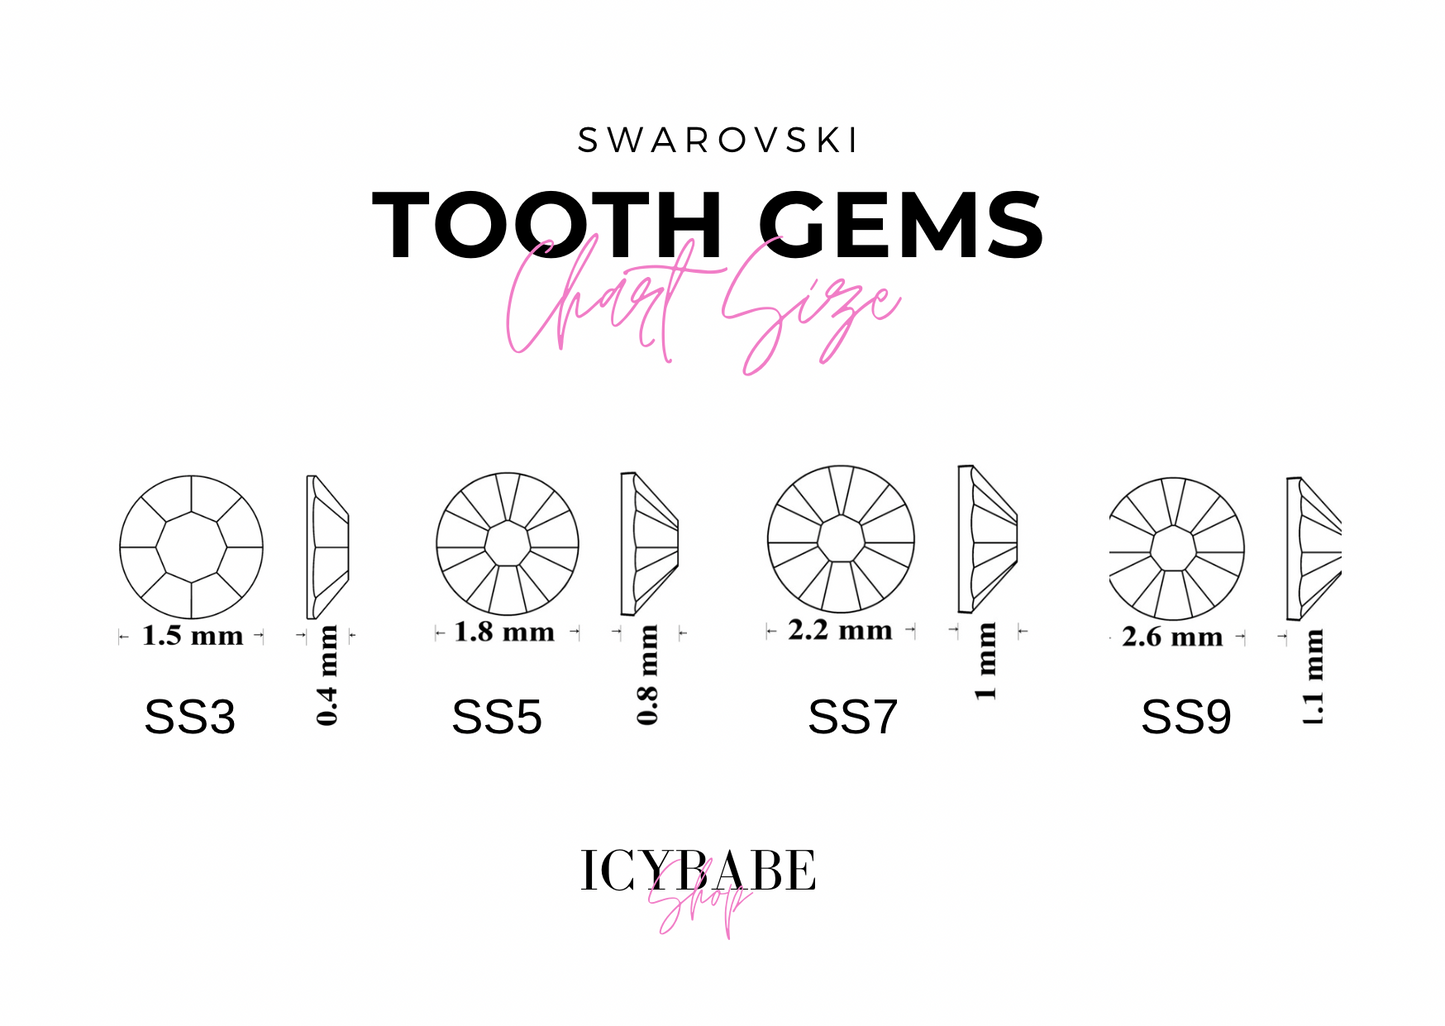 TANGERINE Swarovski 2058 Strass dentaire / Tooth gems